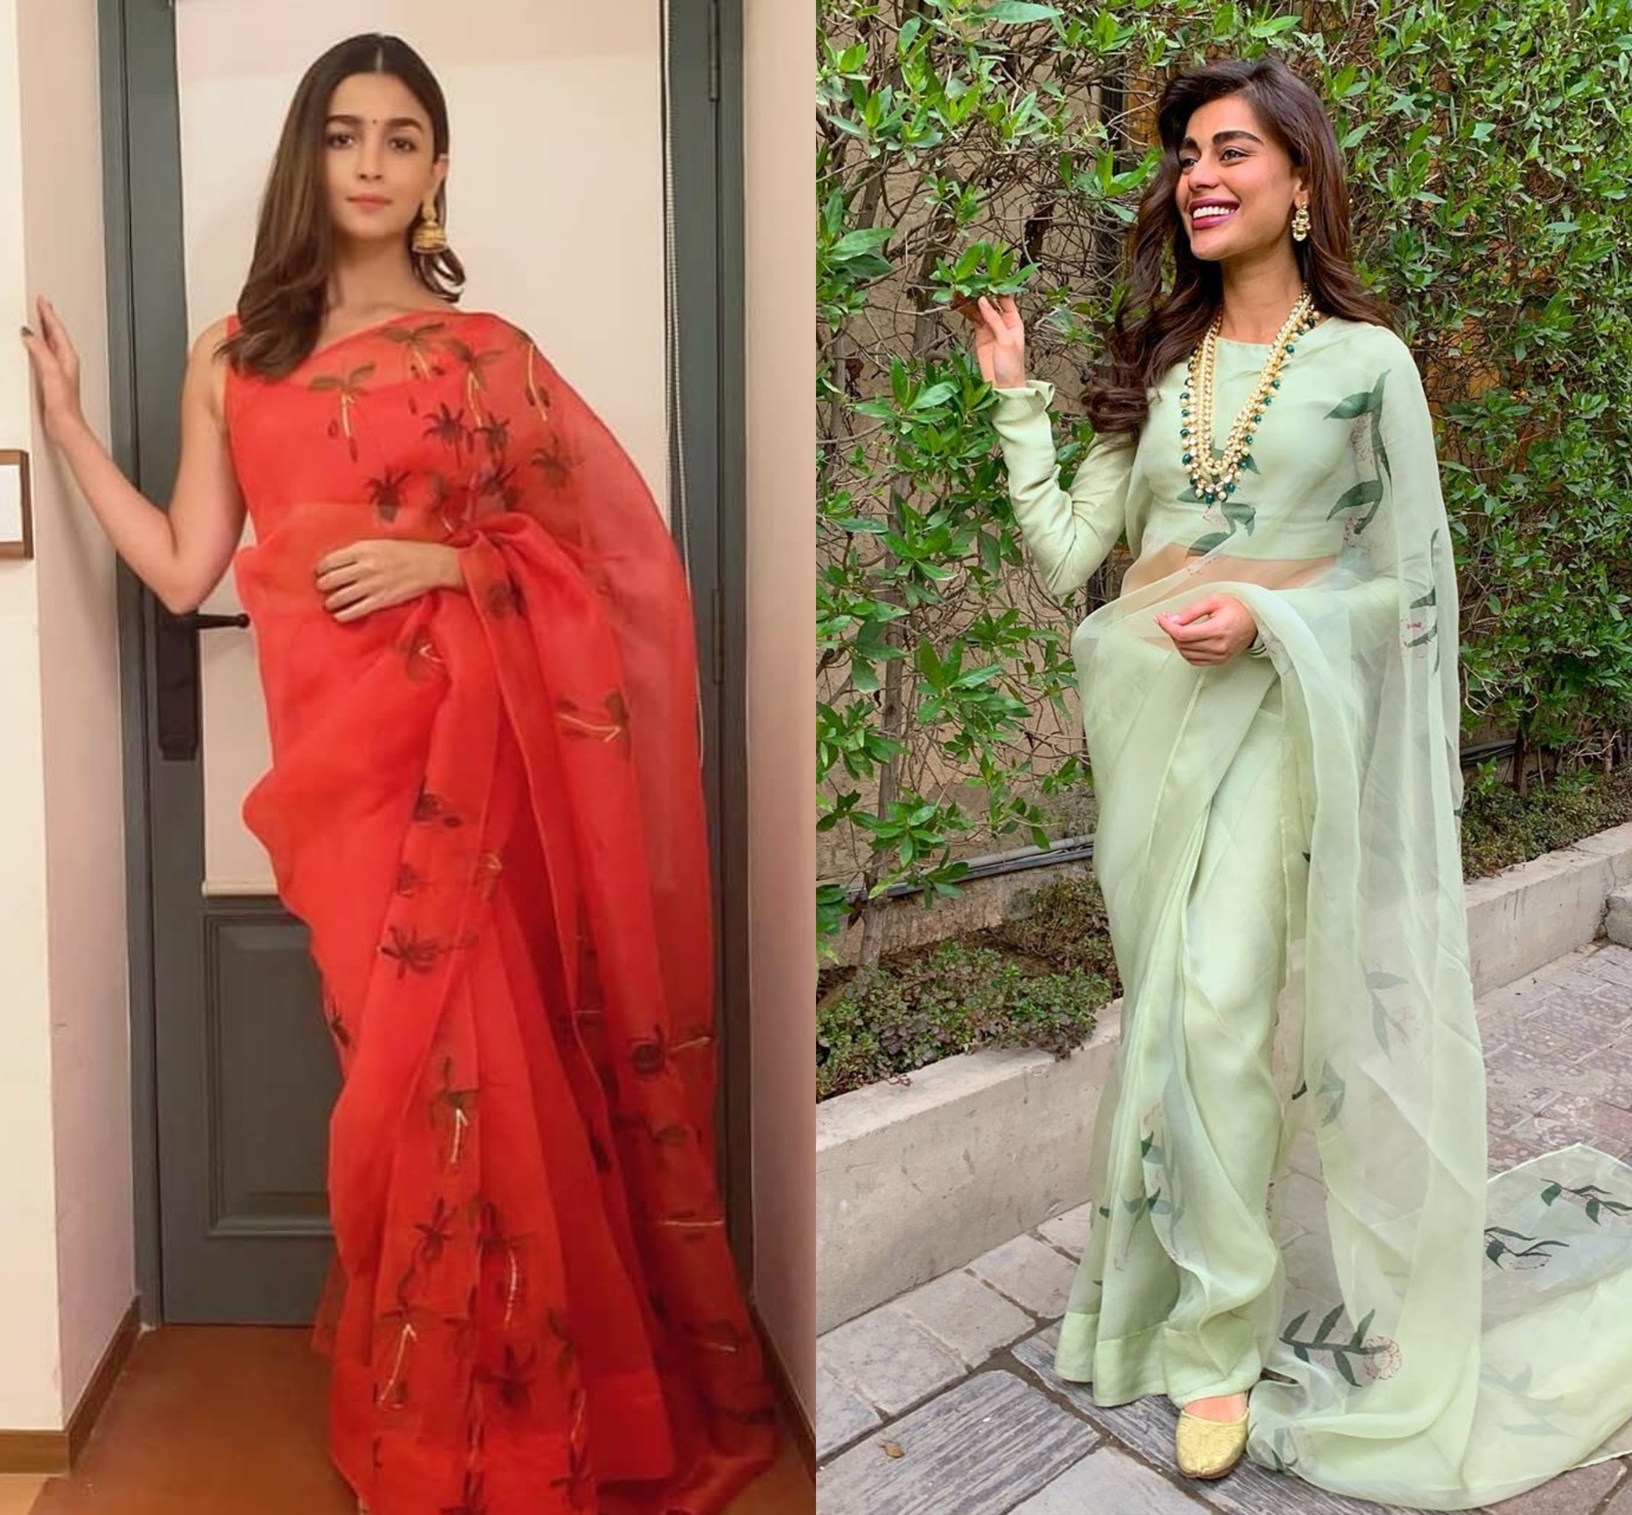 Sadaf Kanwal Sex Hd - Three Organza Saris We Fell In Love With In 2019 - Masala